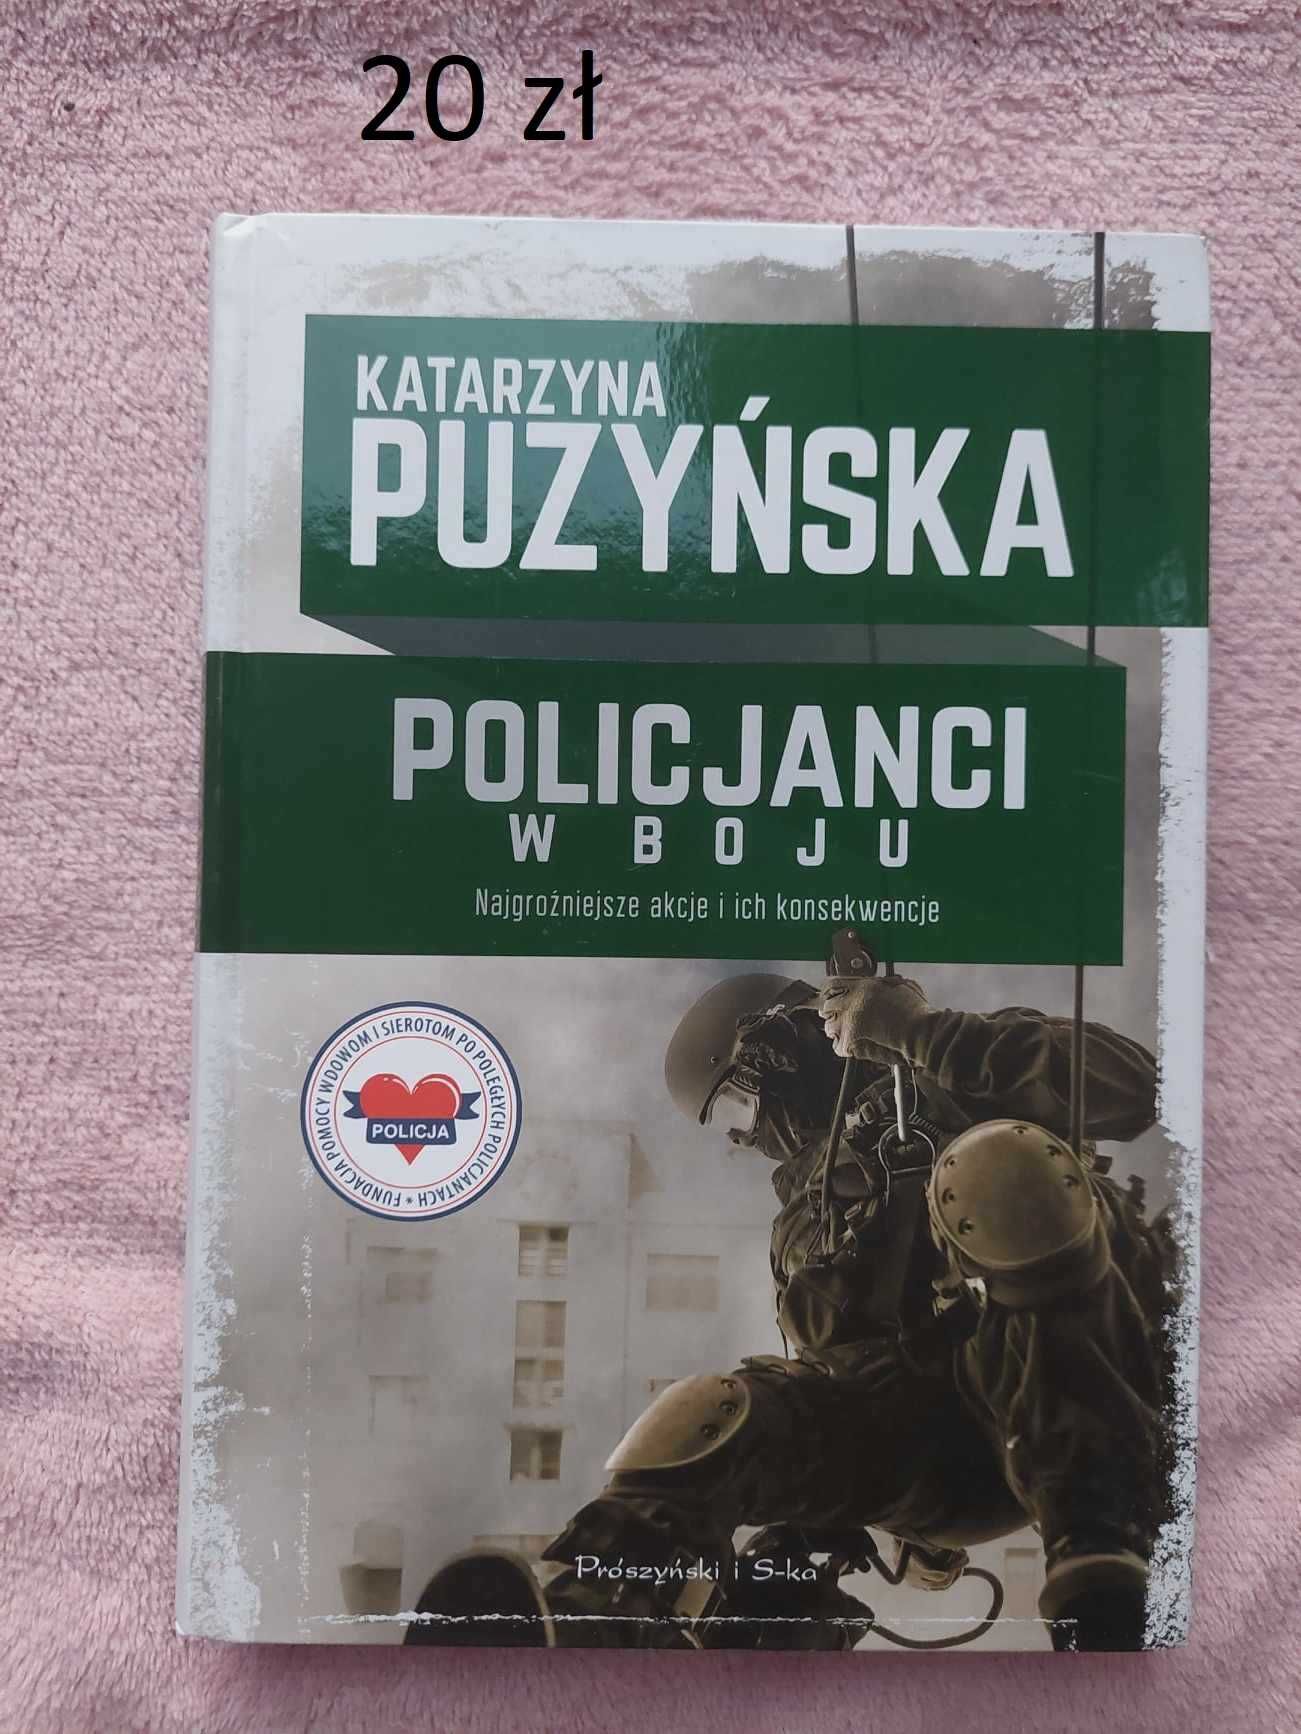 "Policjanci. W boju."Puzyńska Katarzyna